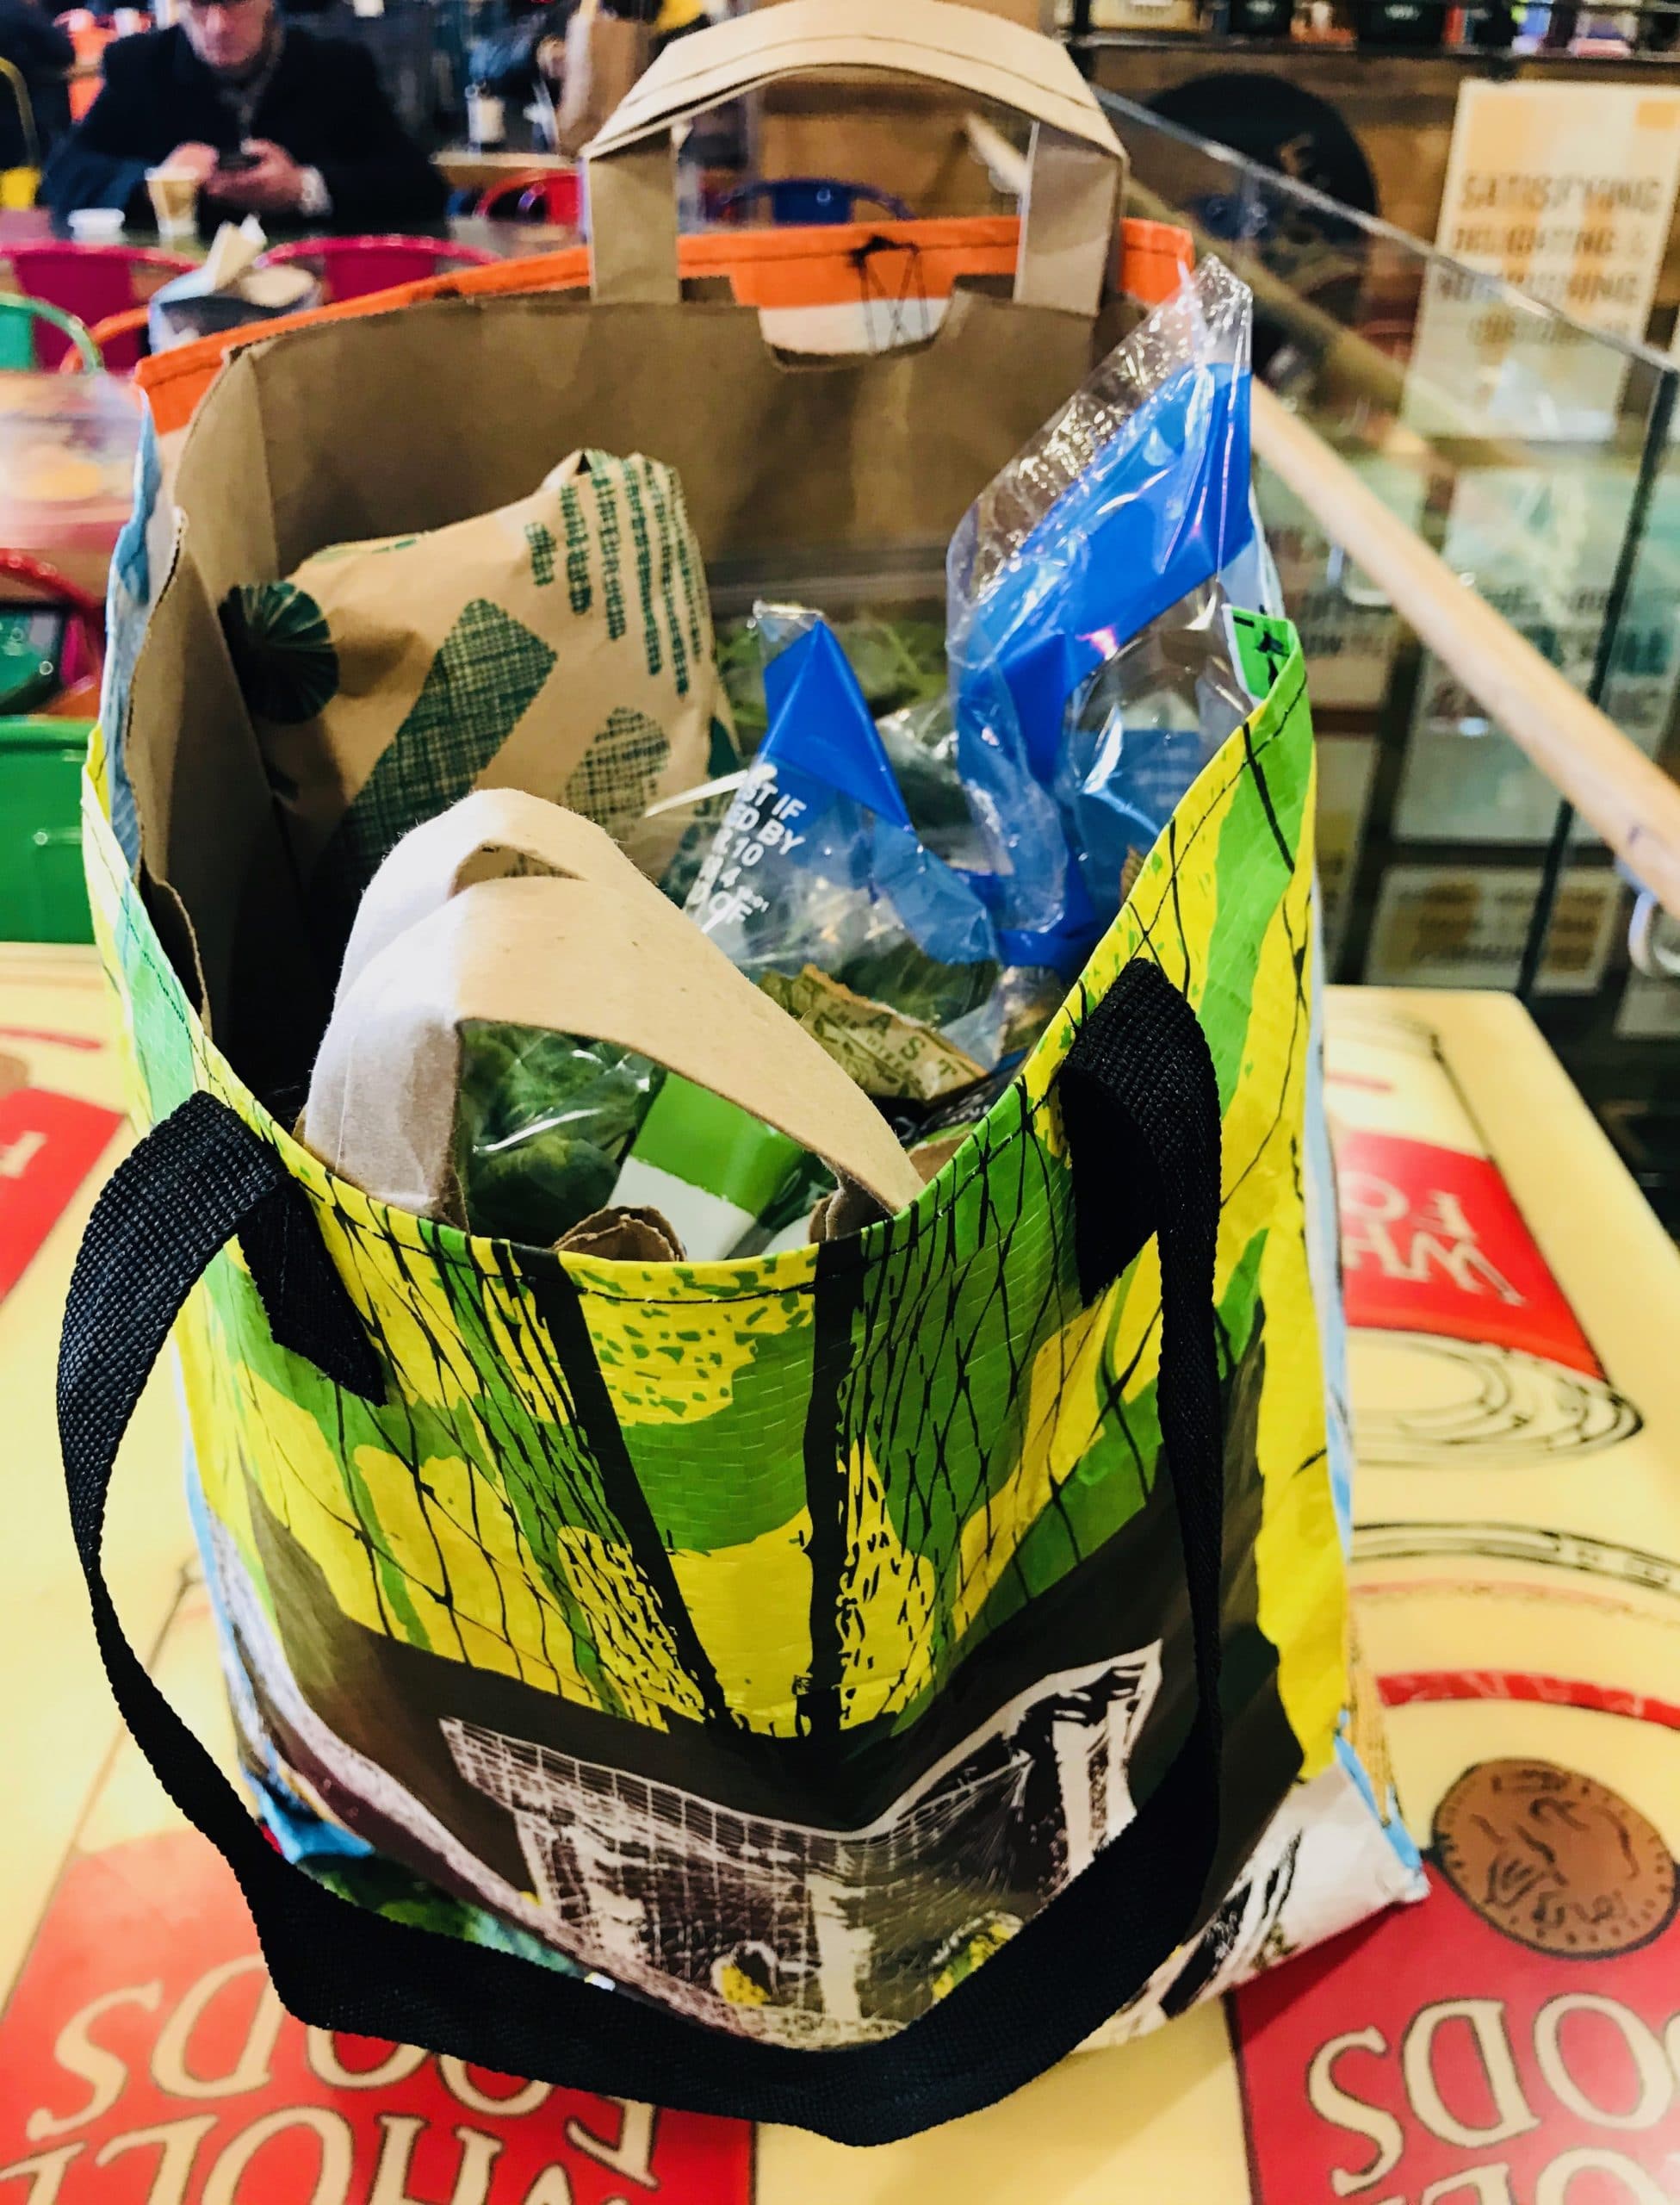 NYC Plastic Bag Ban